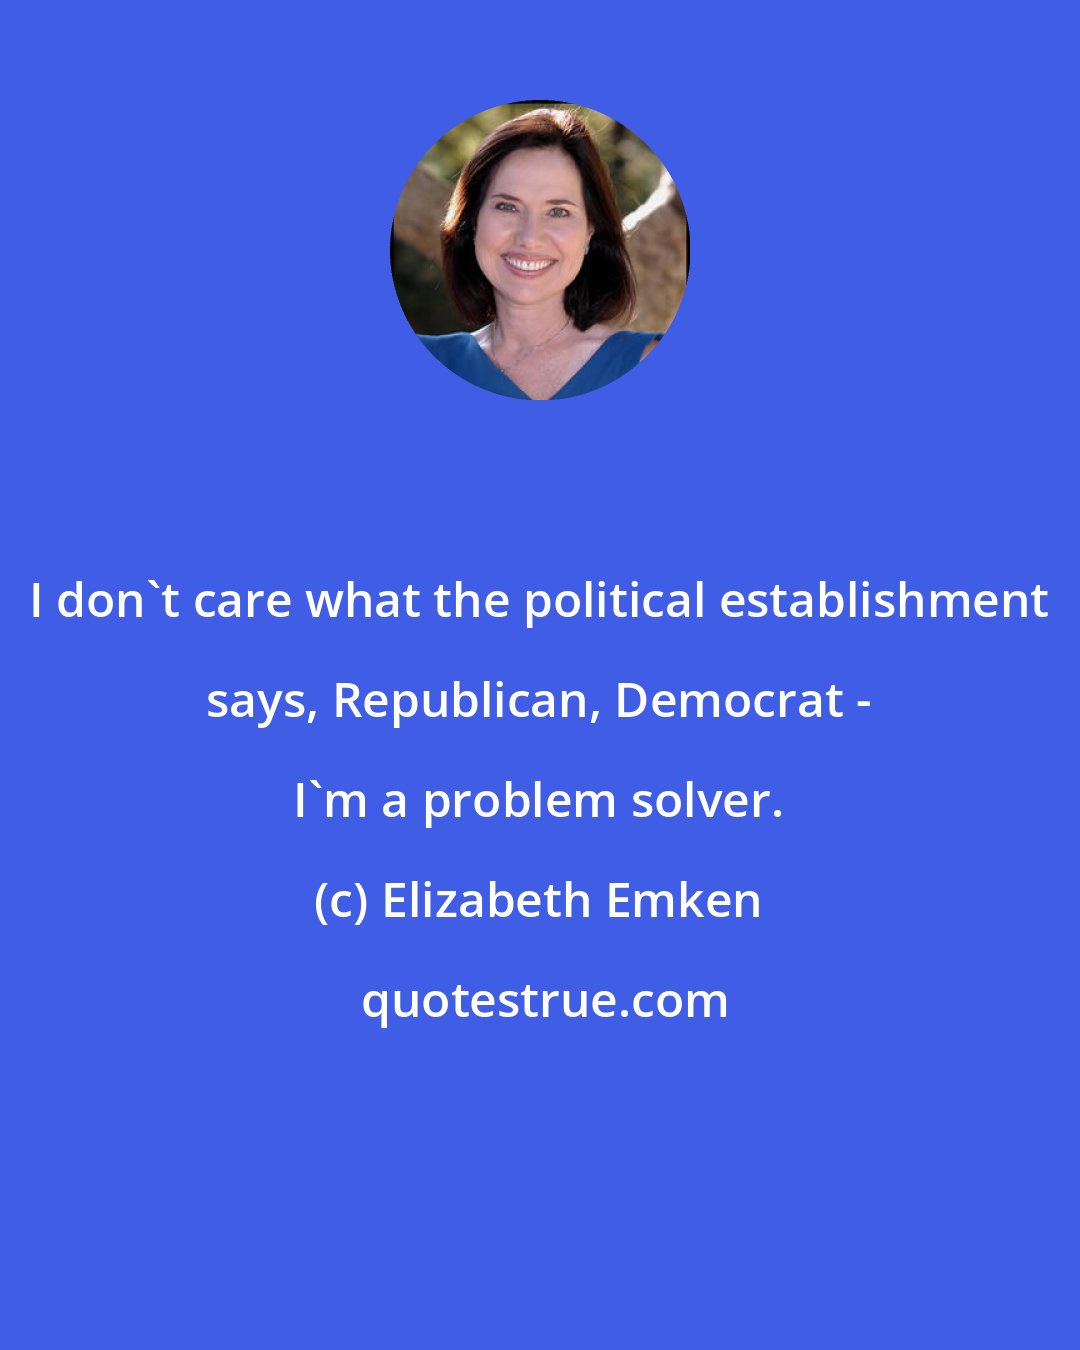 Elizabeth Emken: I don't care what the political establishment says, Republican, Democrat - I'm a problem solver.